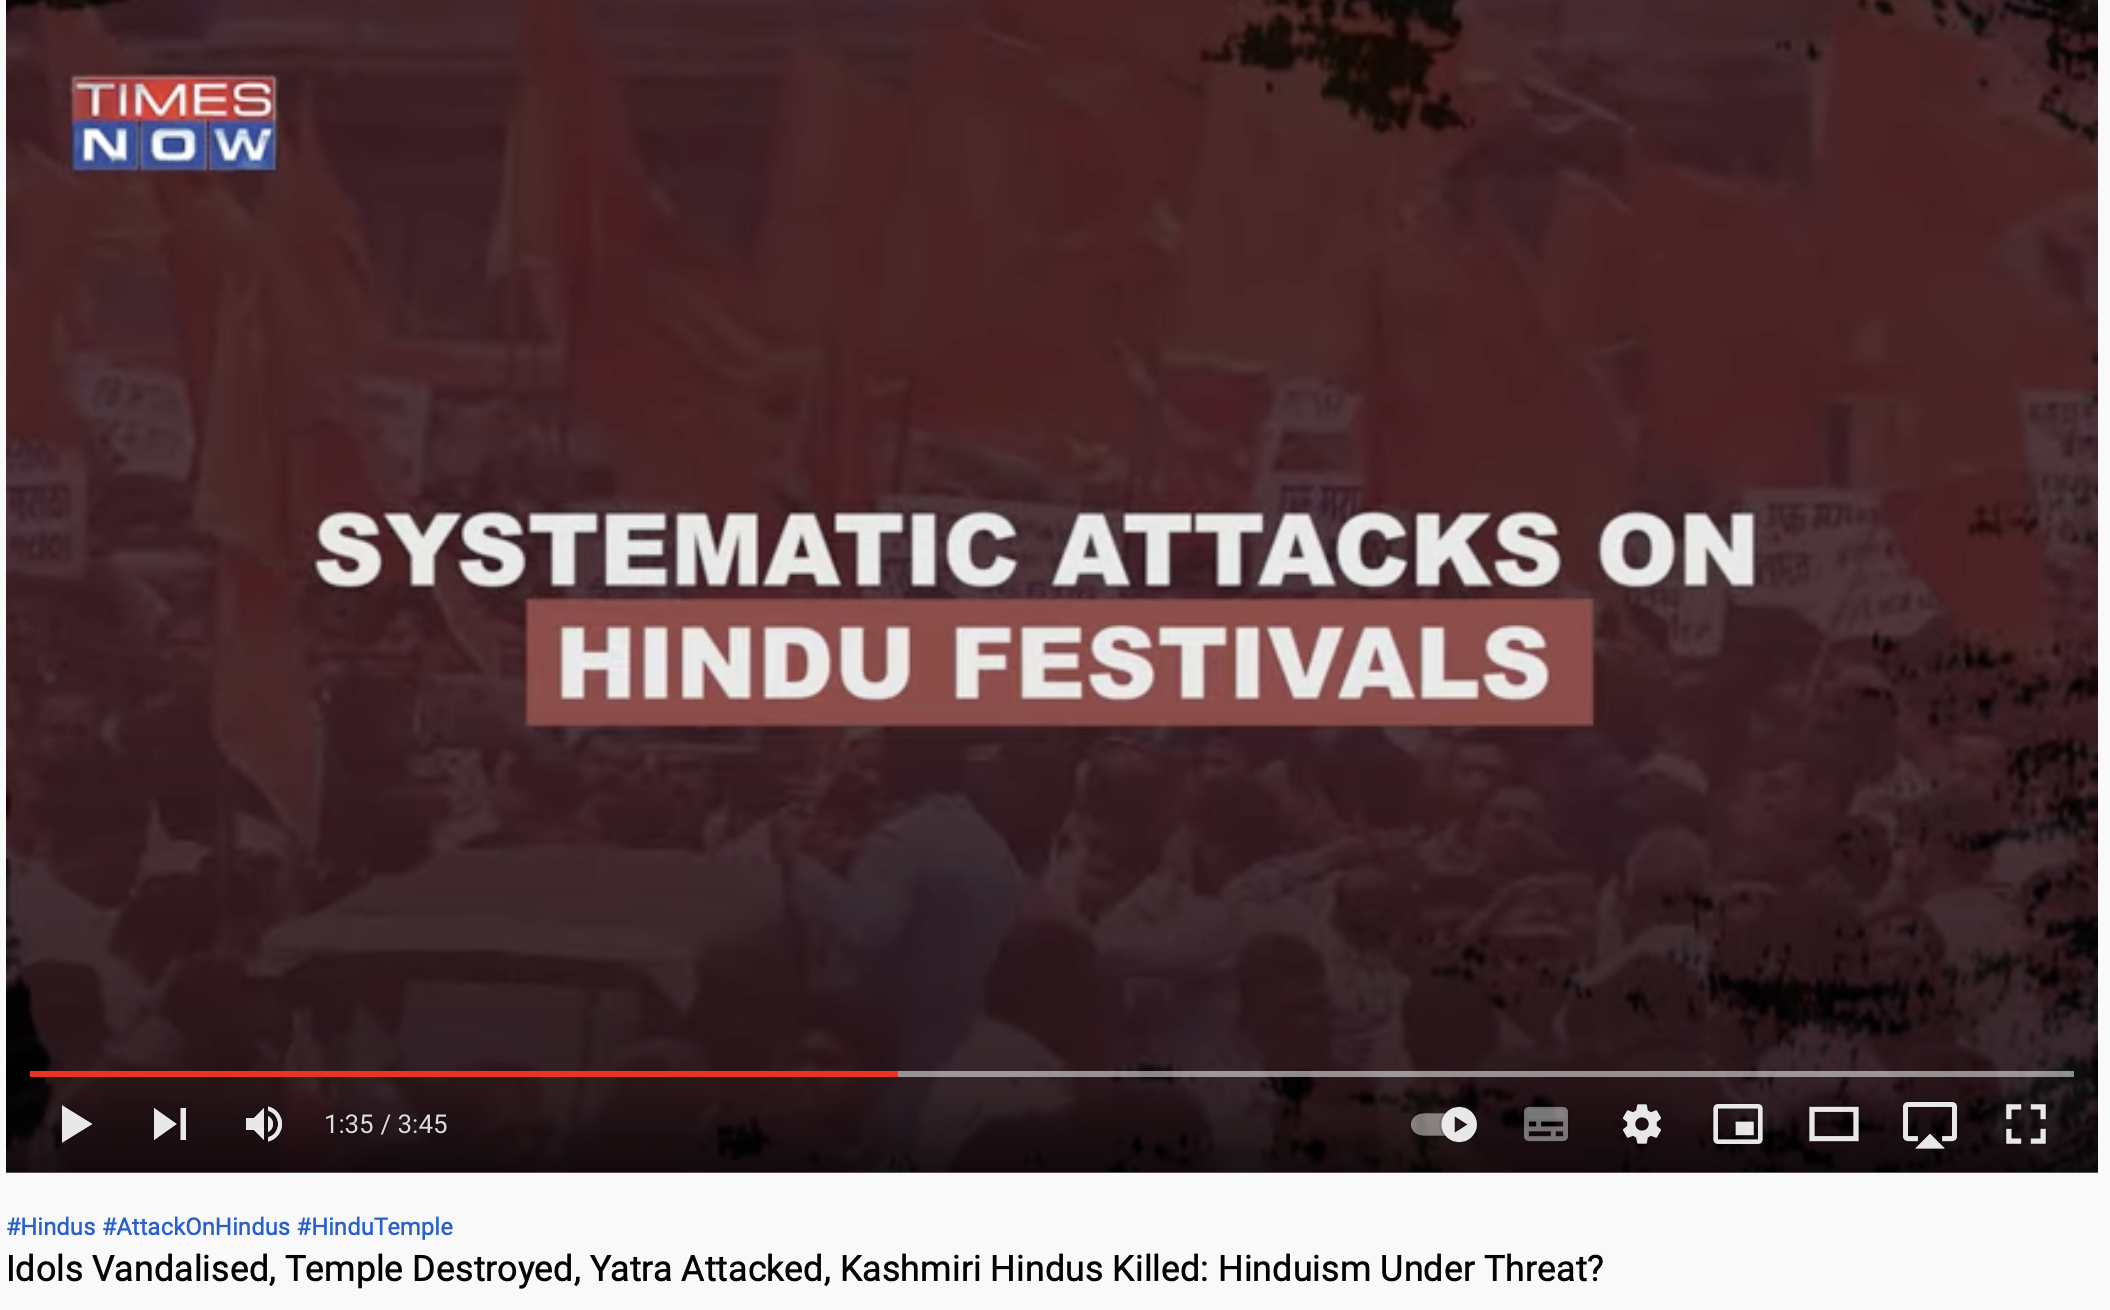 Systamatic Attack on Hindu Festivals